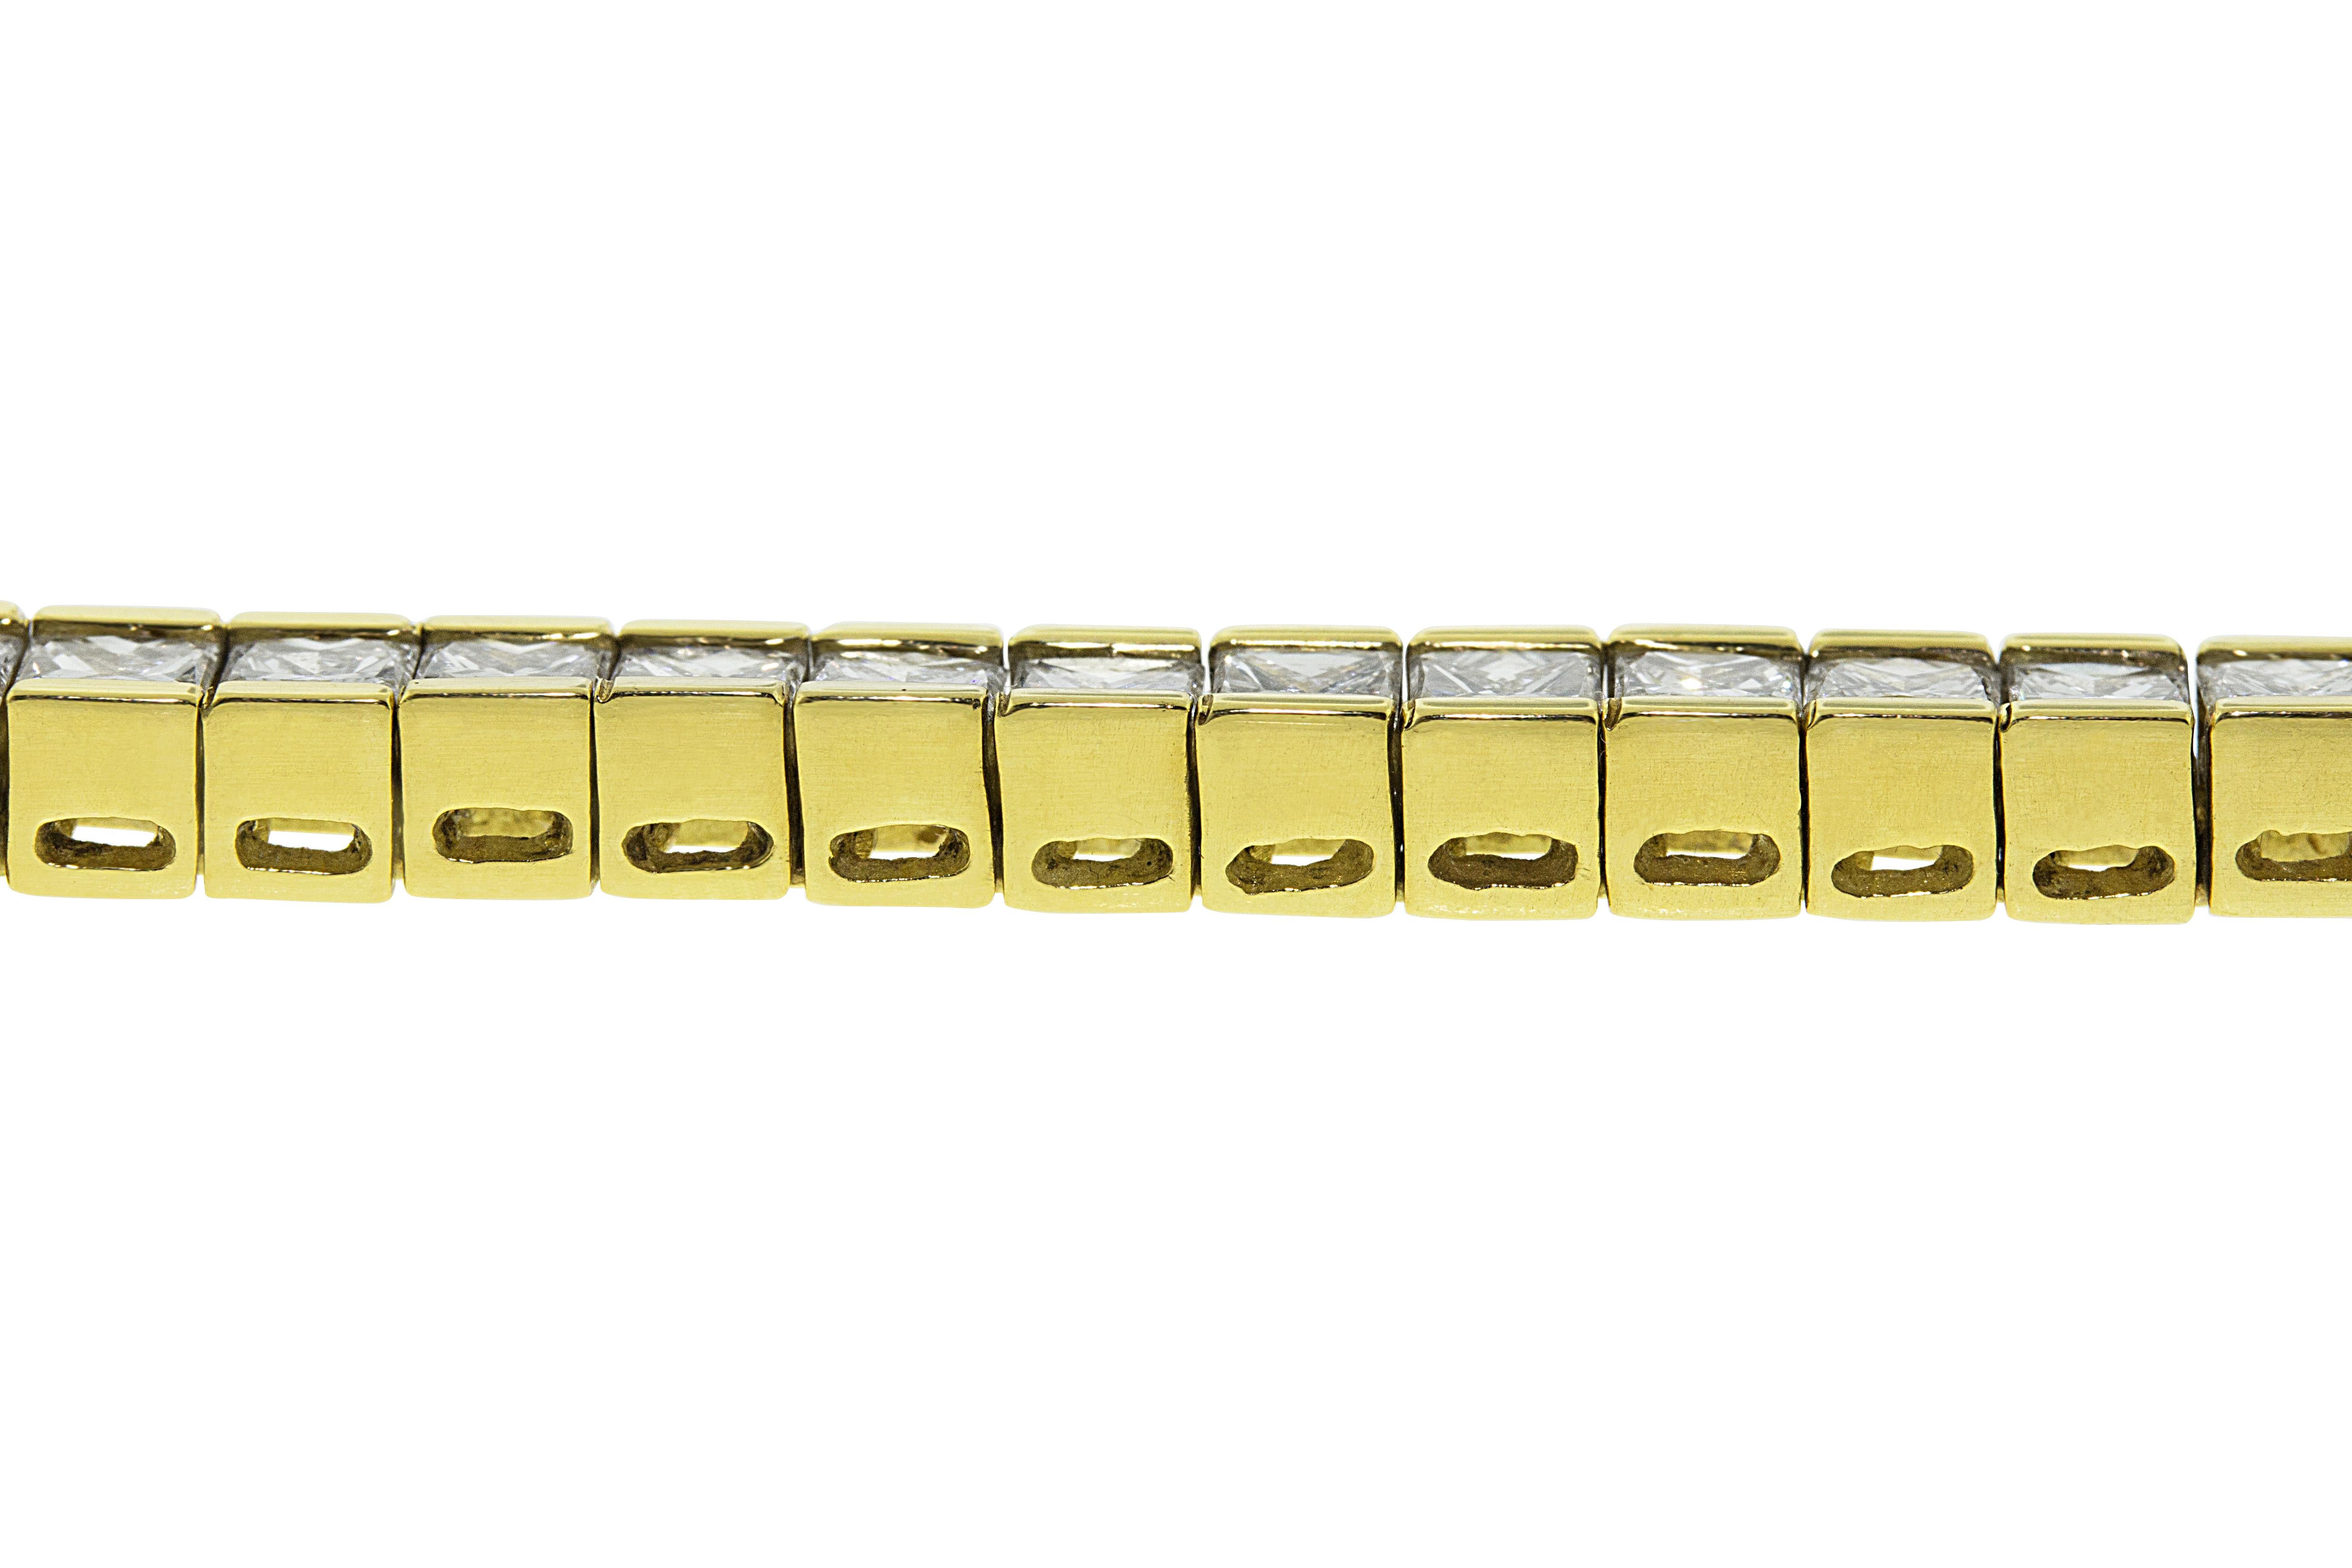 11.66 Karat Diamanten im Princess-Schliff (G-H VS), eingefasst in 18 Karat Gelbgold. 55 Diamanten. 7.5 Zoll Länge.

Kann auf Anfrage verkleinert werden. 

Besichtigungen in unserem Ausstellungsraum in NYC sind nach Vereinbarung möglich.